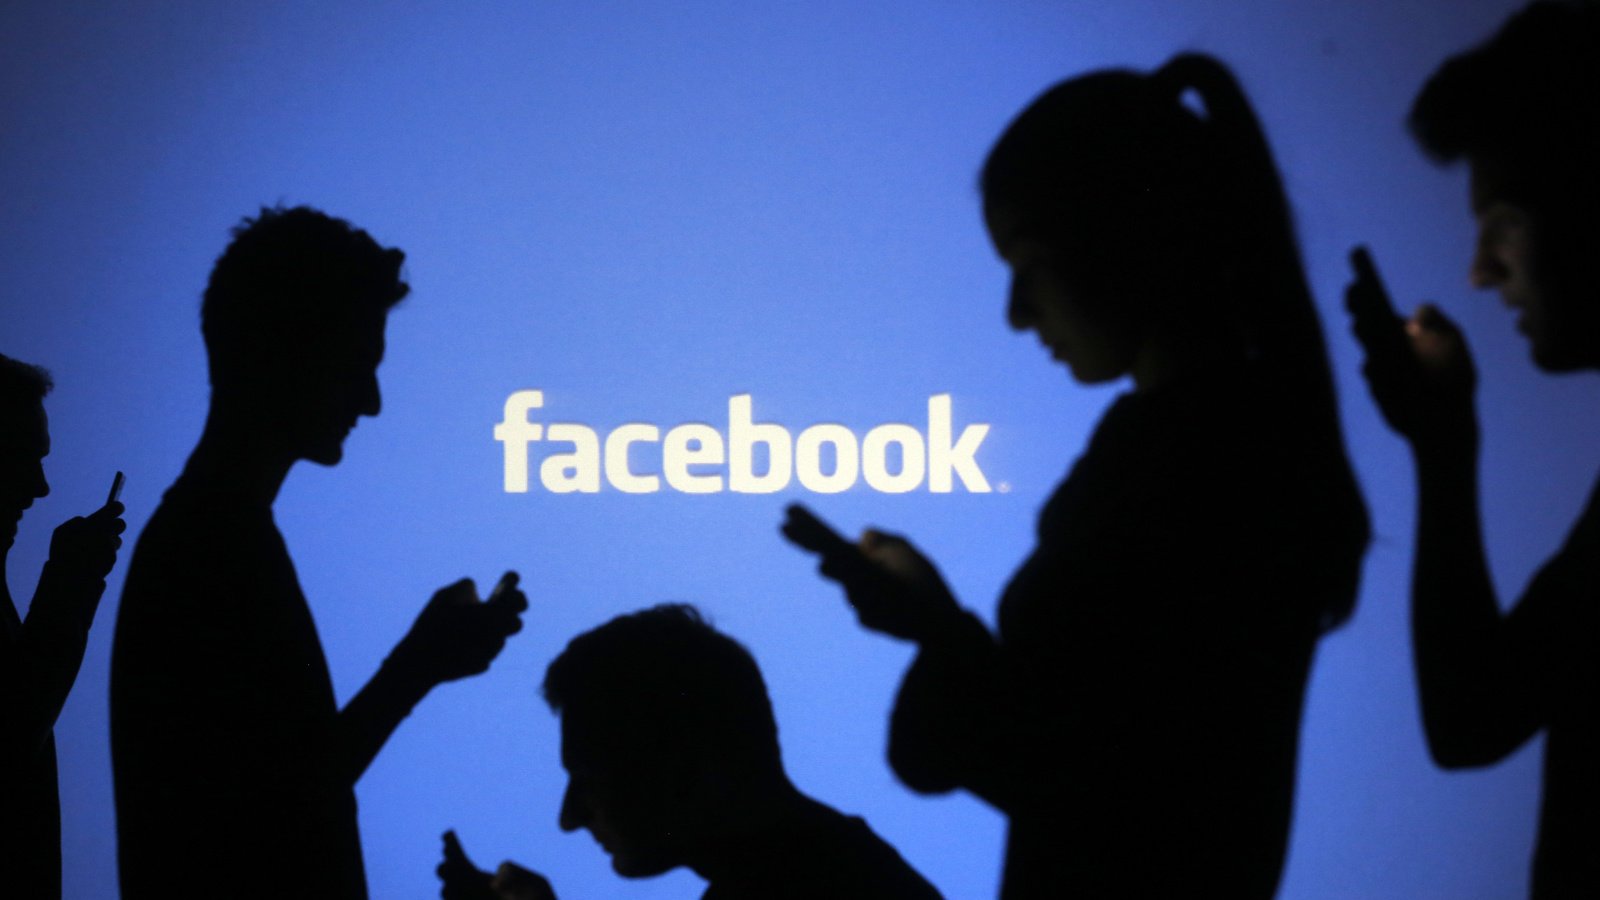 Anh phạt Facebook 70 triệu USD vì không hợp tác điều tra